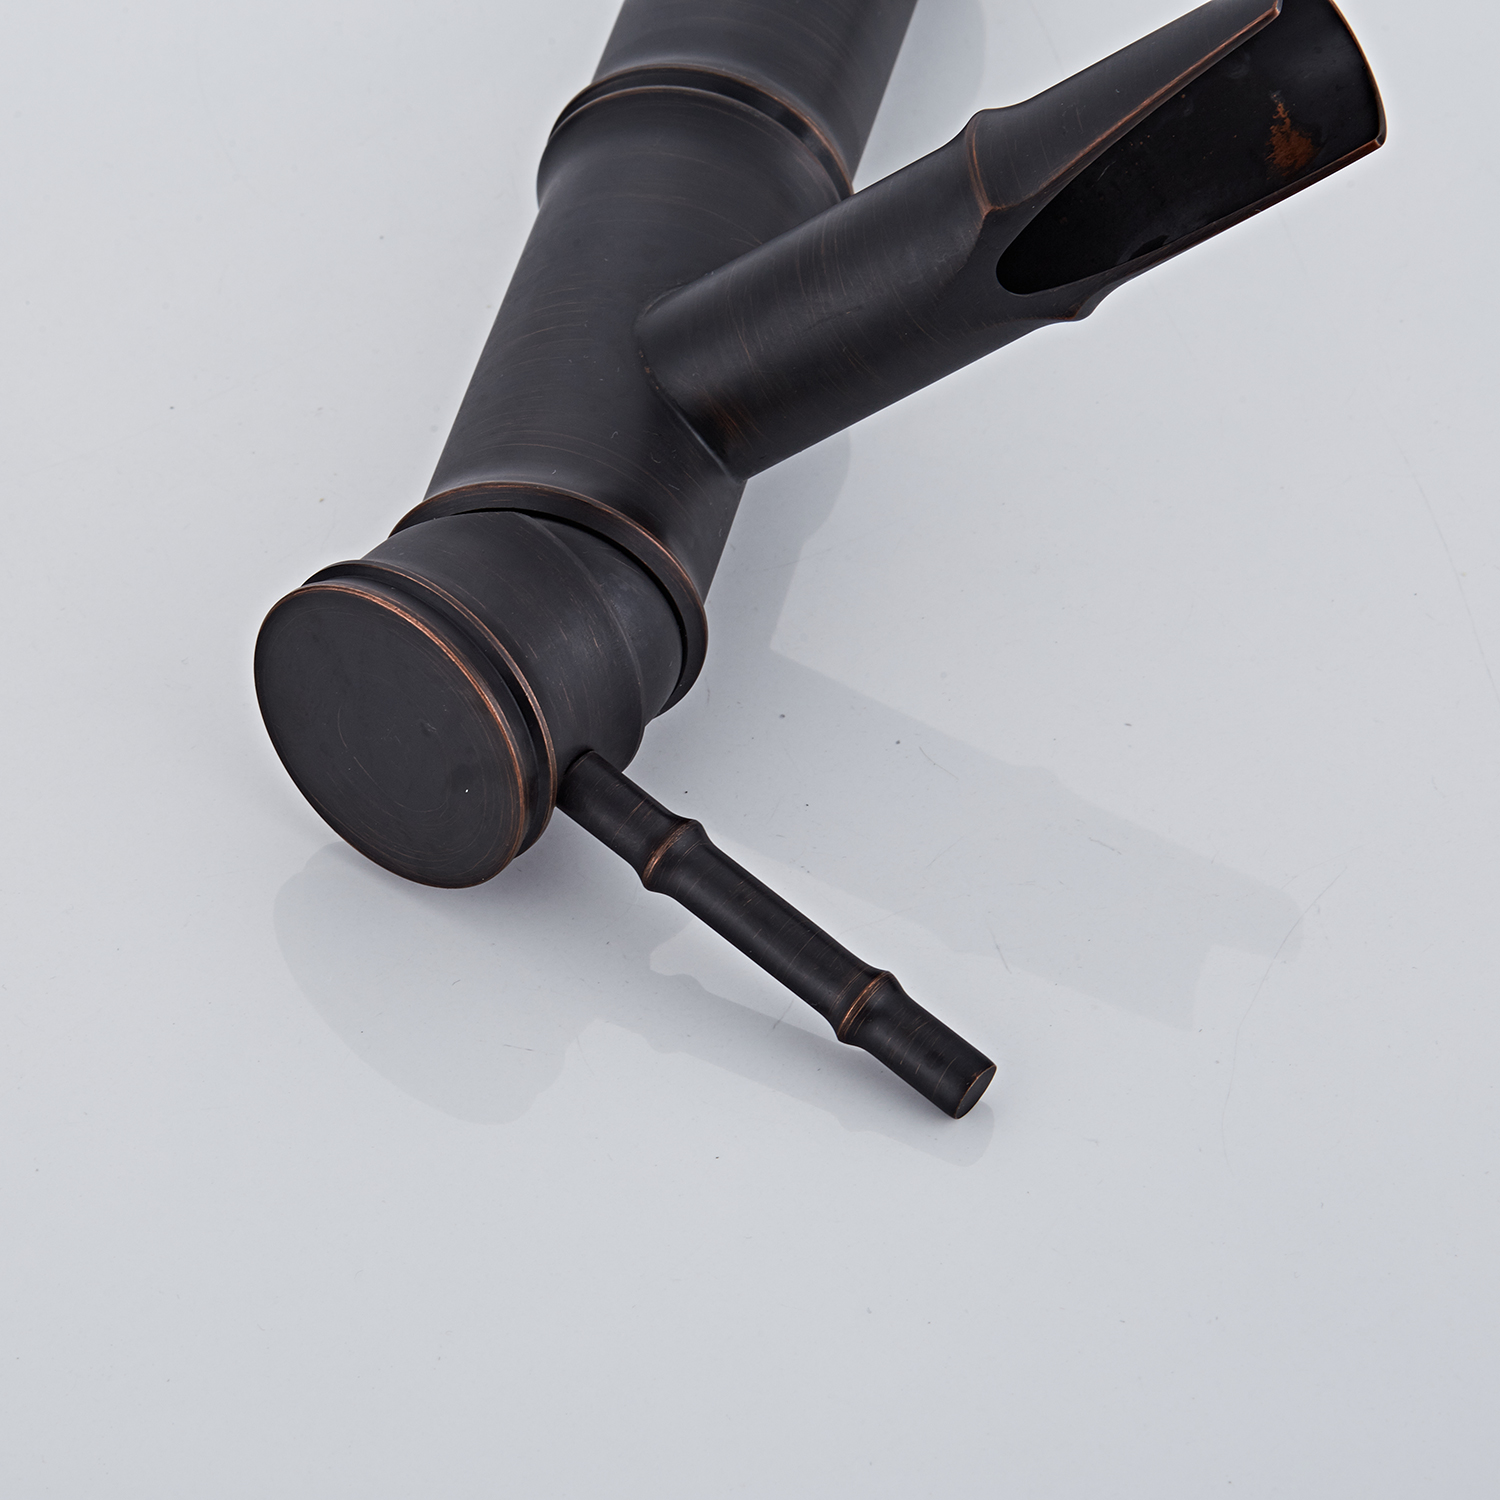 竹の形をした黒のモダンなミニマリストファミリースタイルの大気洗面台の蛇口 (2)